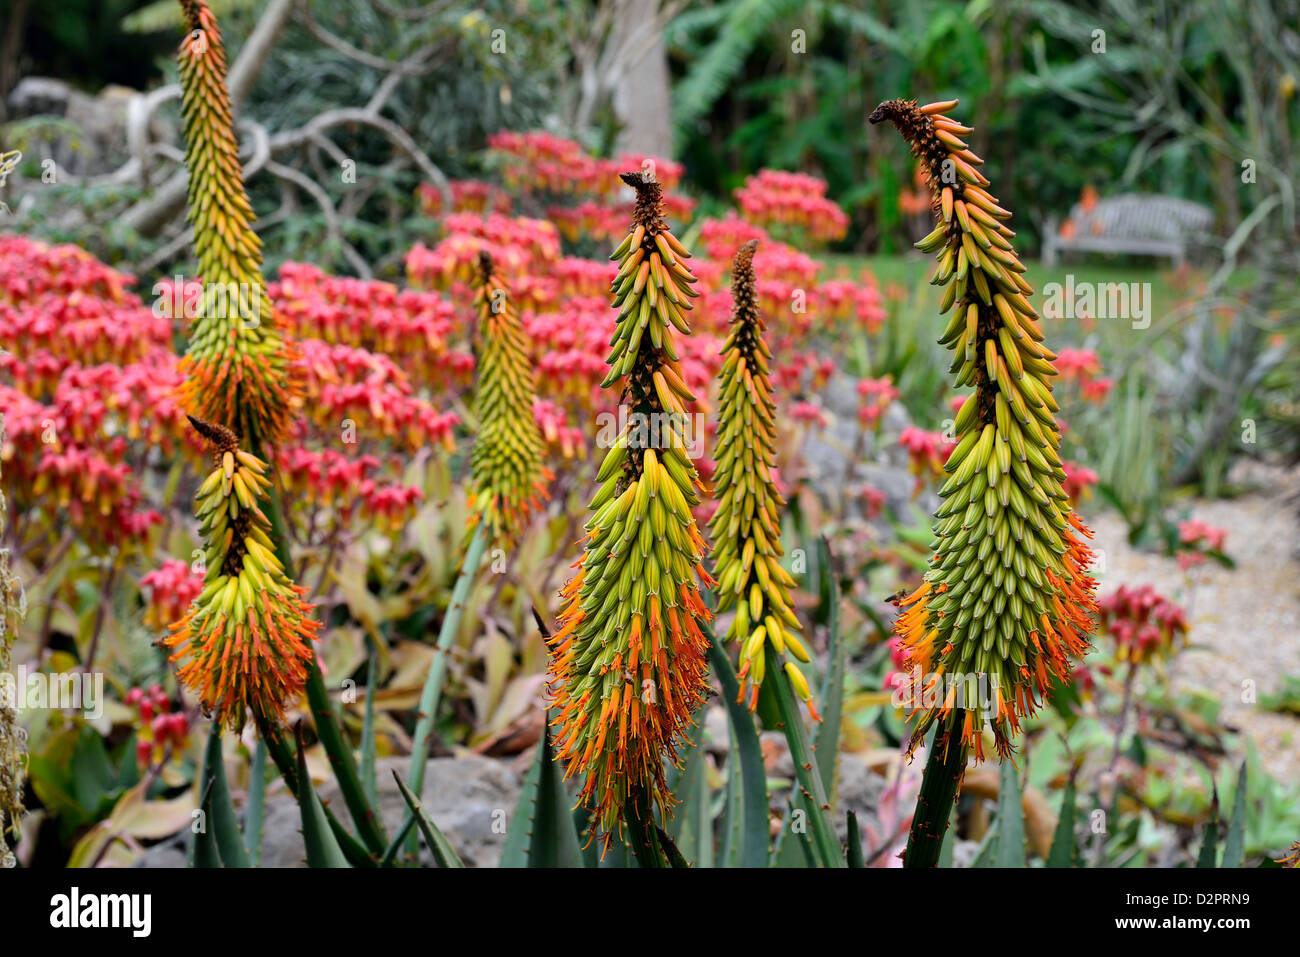 Agave coloratissimi fiori. Fairchild giardino botanico. Coral Gables, Florida, Stati Uniti d'America. Foto Stock